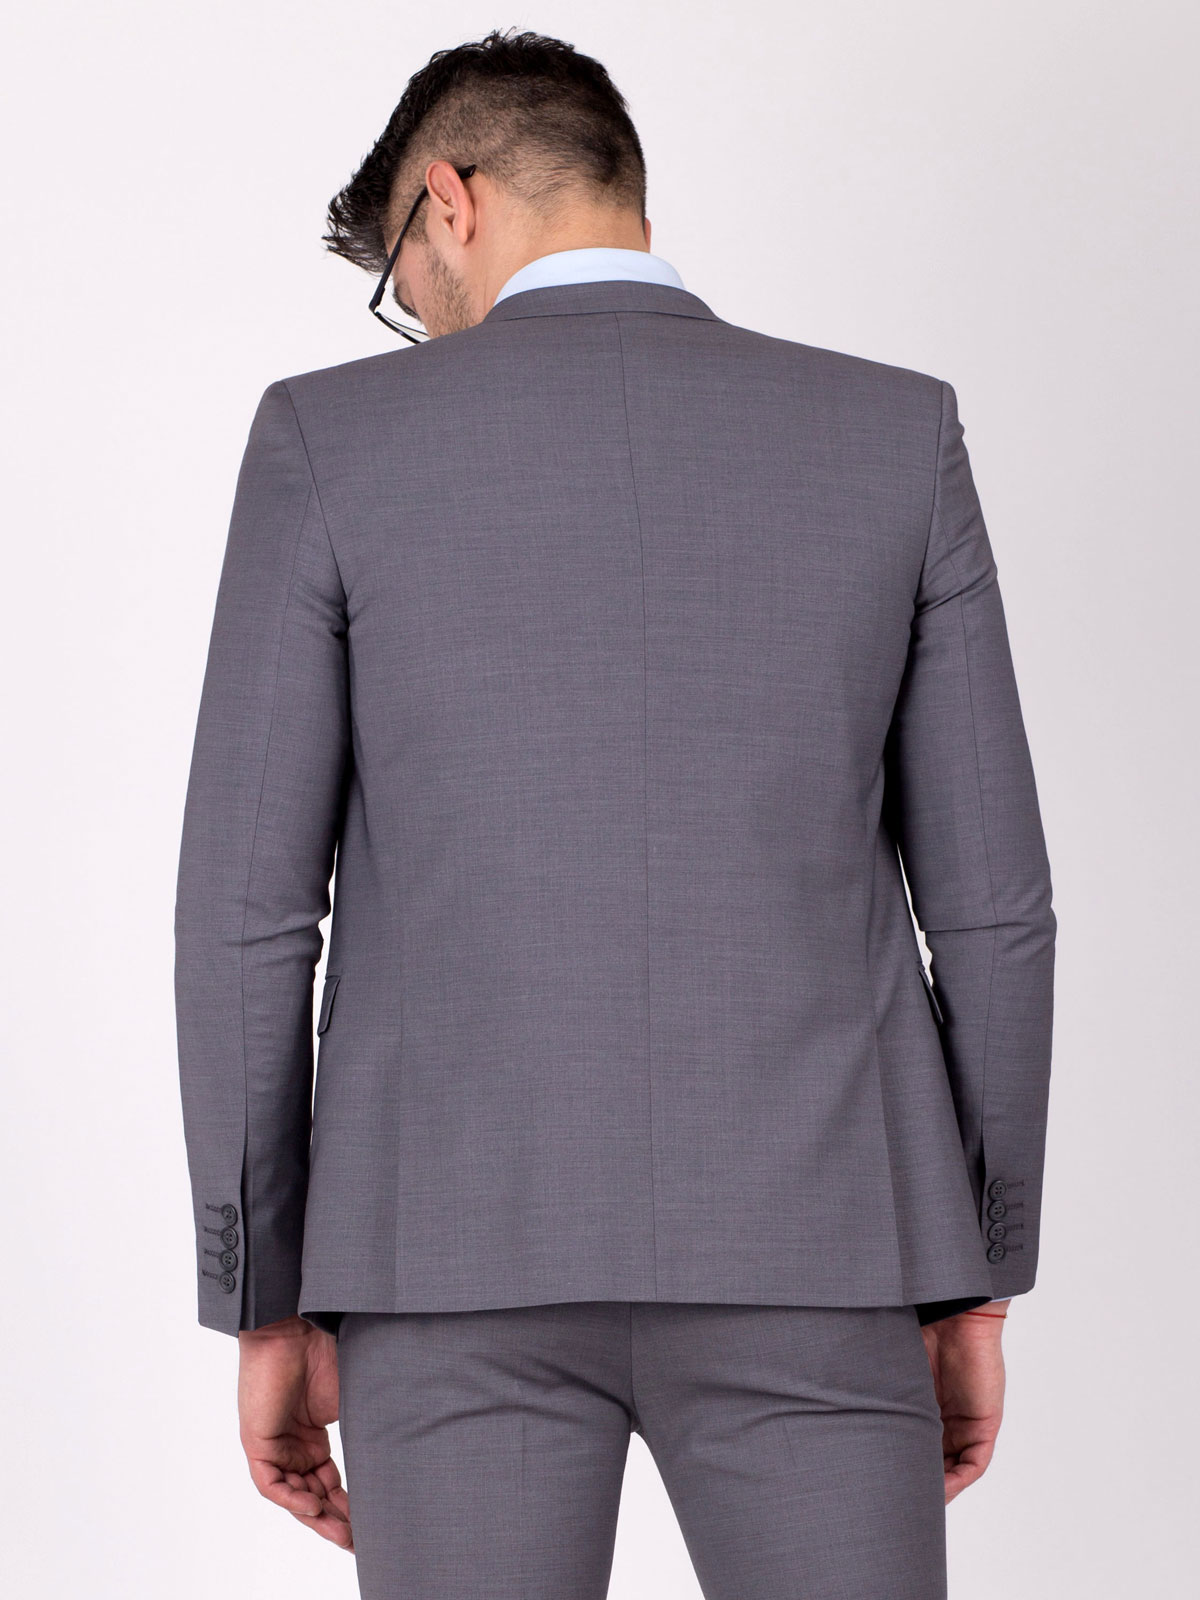 Elegant jacket in light gray - 64073 € 72.55 img3